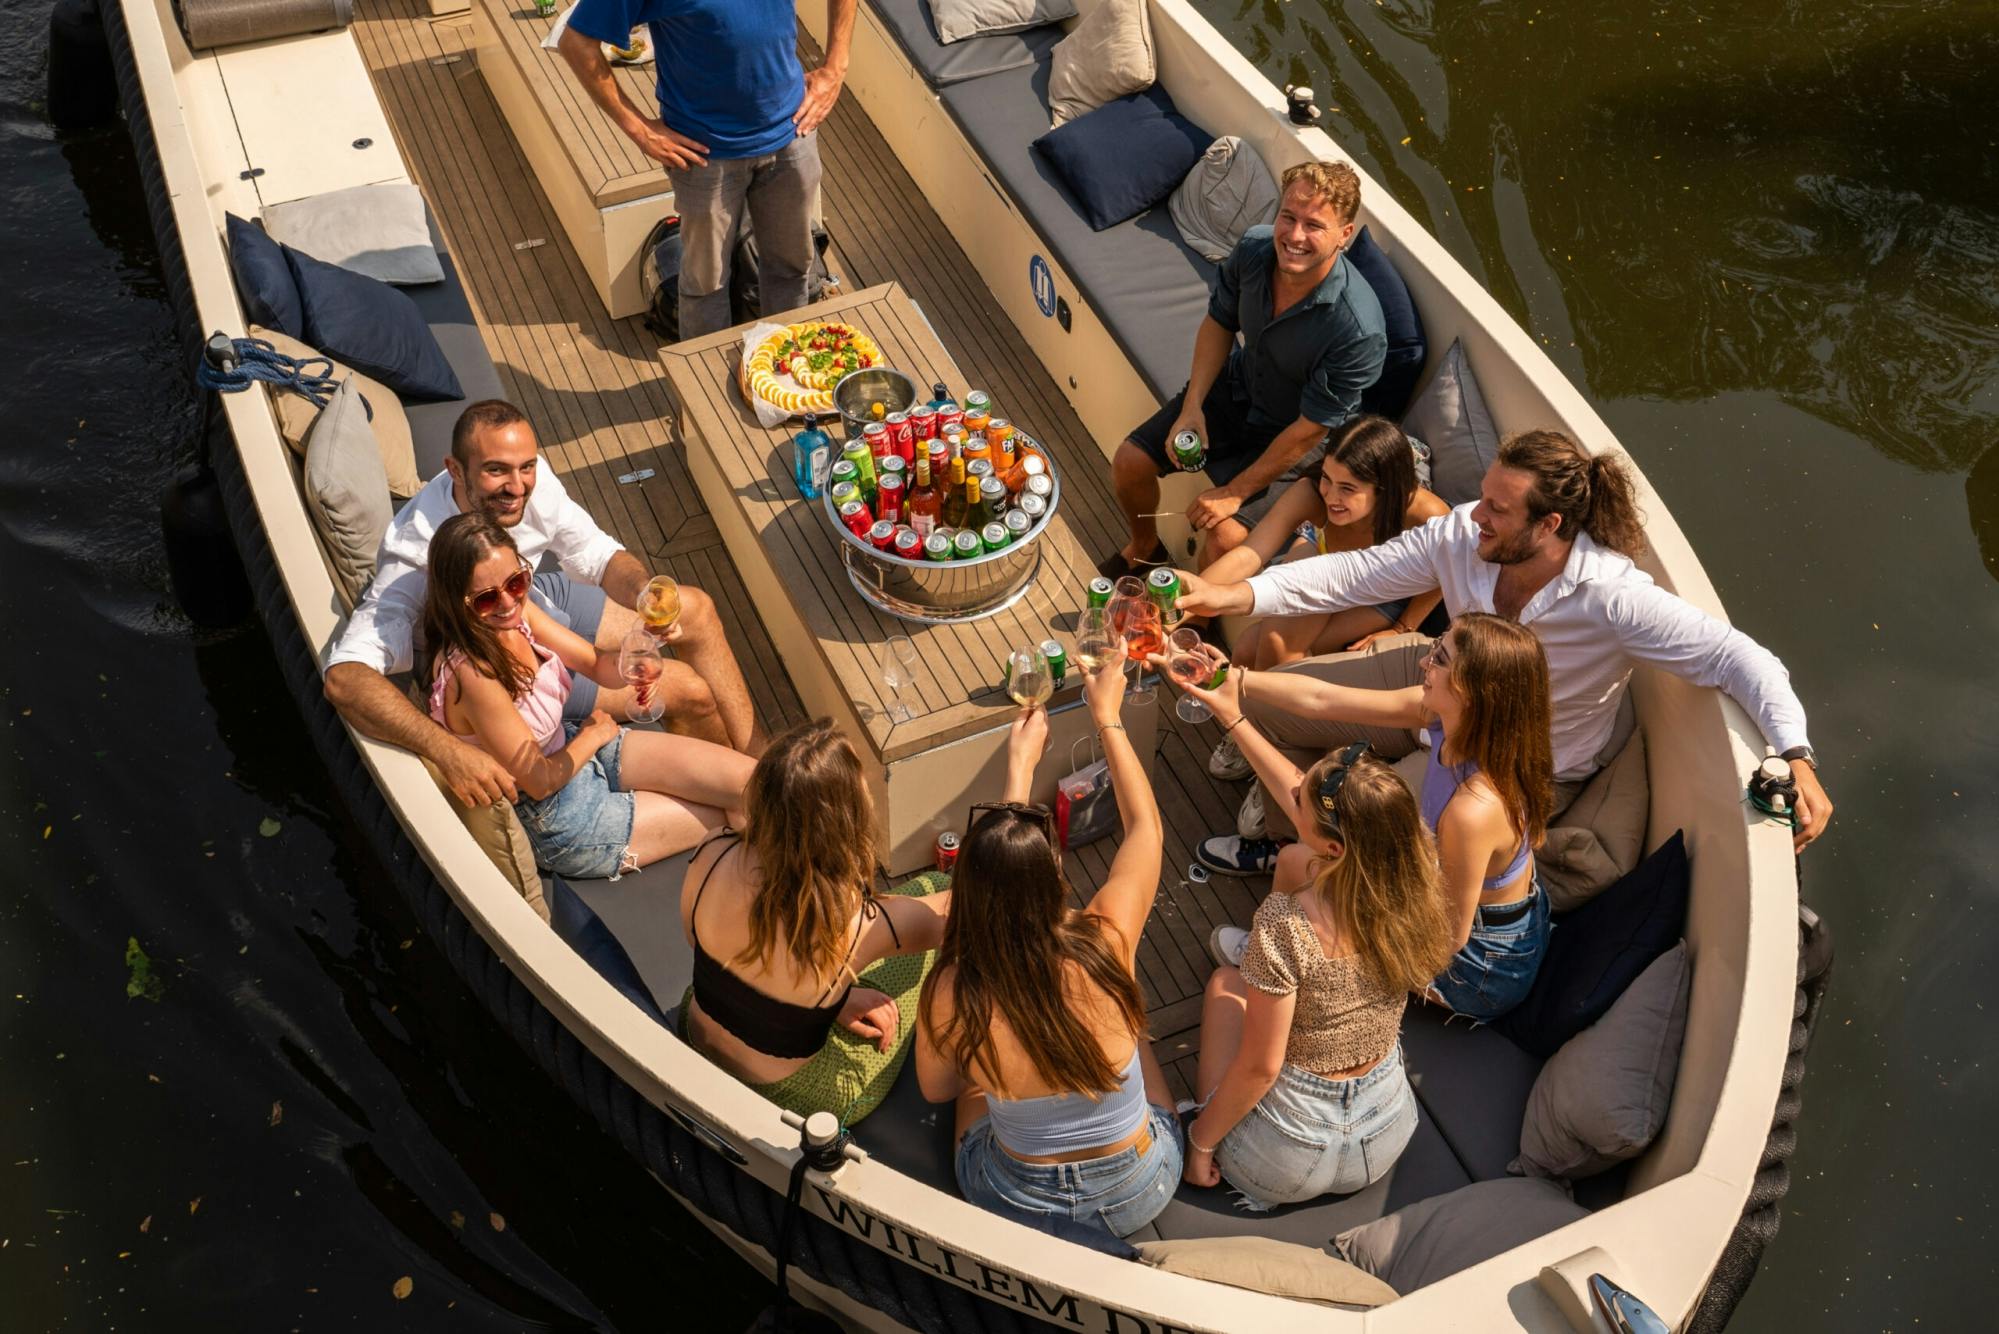 Cruzeiro de luxo pelo canal de Amsterdã com bebidas